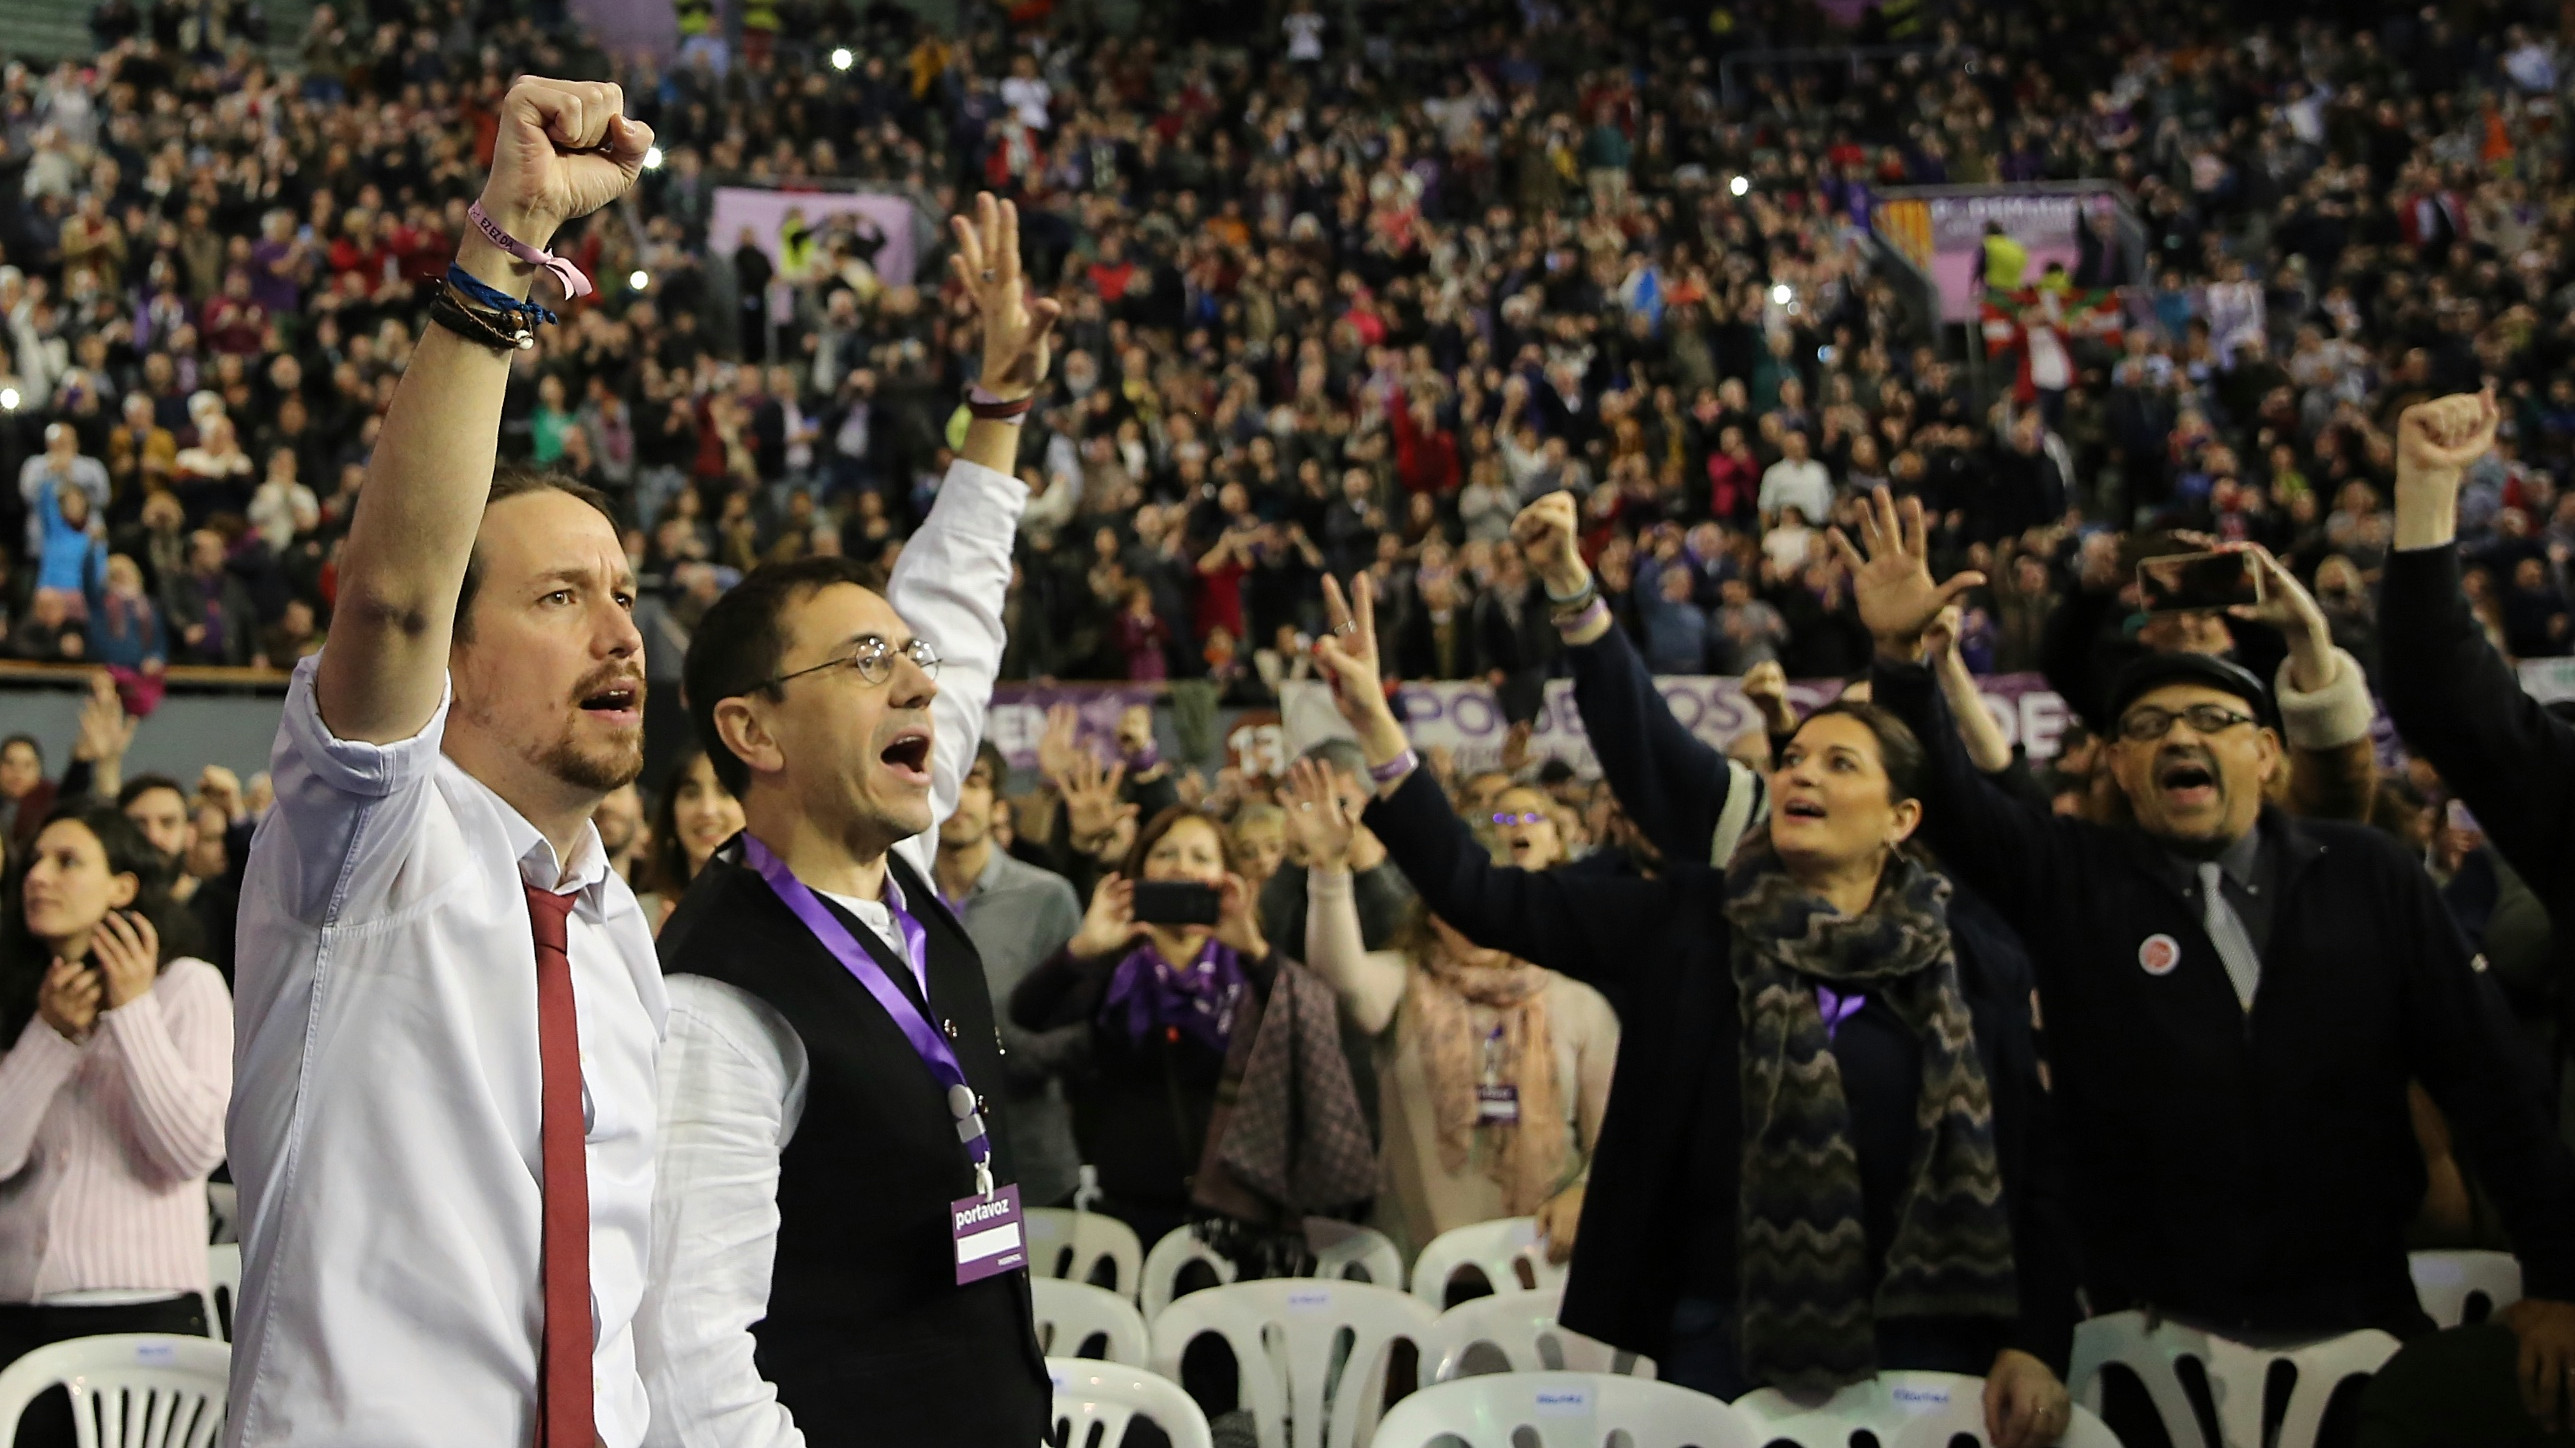 Monedero se lleva a un jefe de Podemos a América Latina para facilitar contratos a Neurona